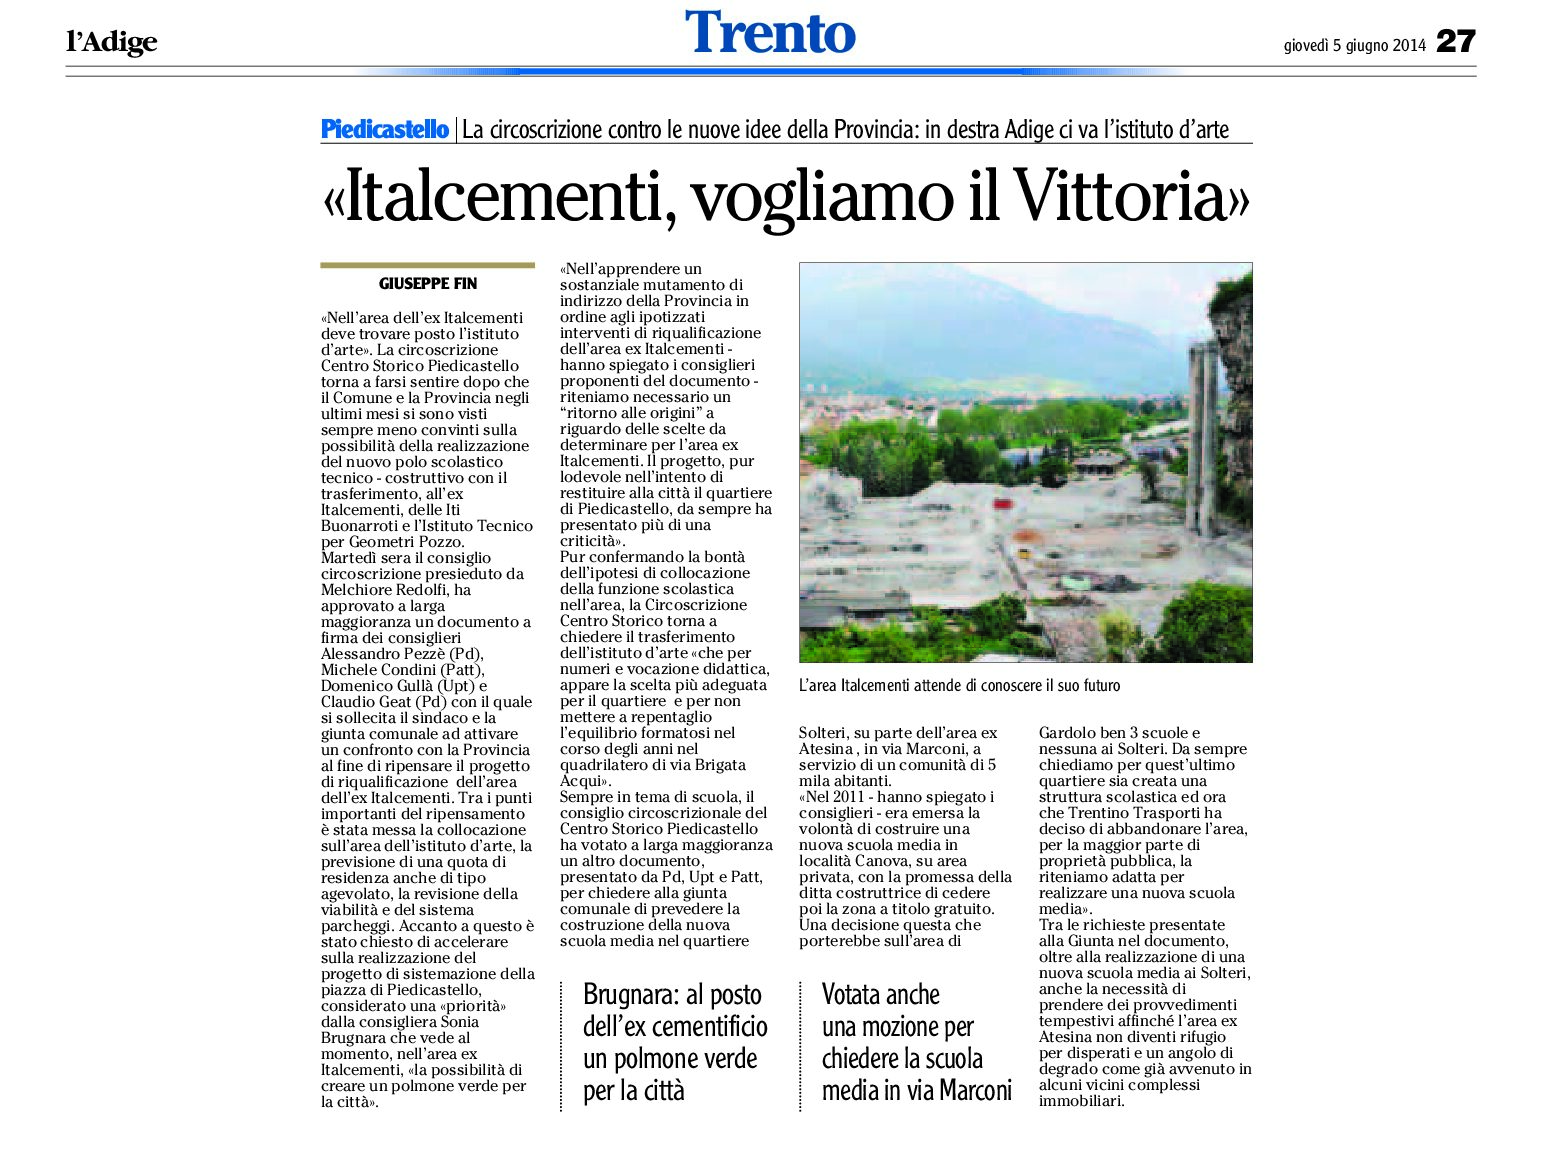 Trento: la Circoscrizione Centro storico Piedicastello “nell’area ex Italcementi vogliamo l’Istituto d’arte”